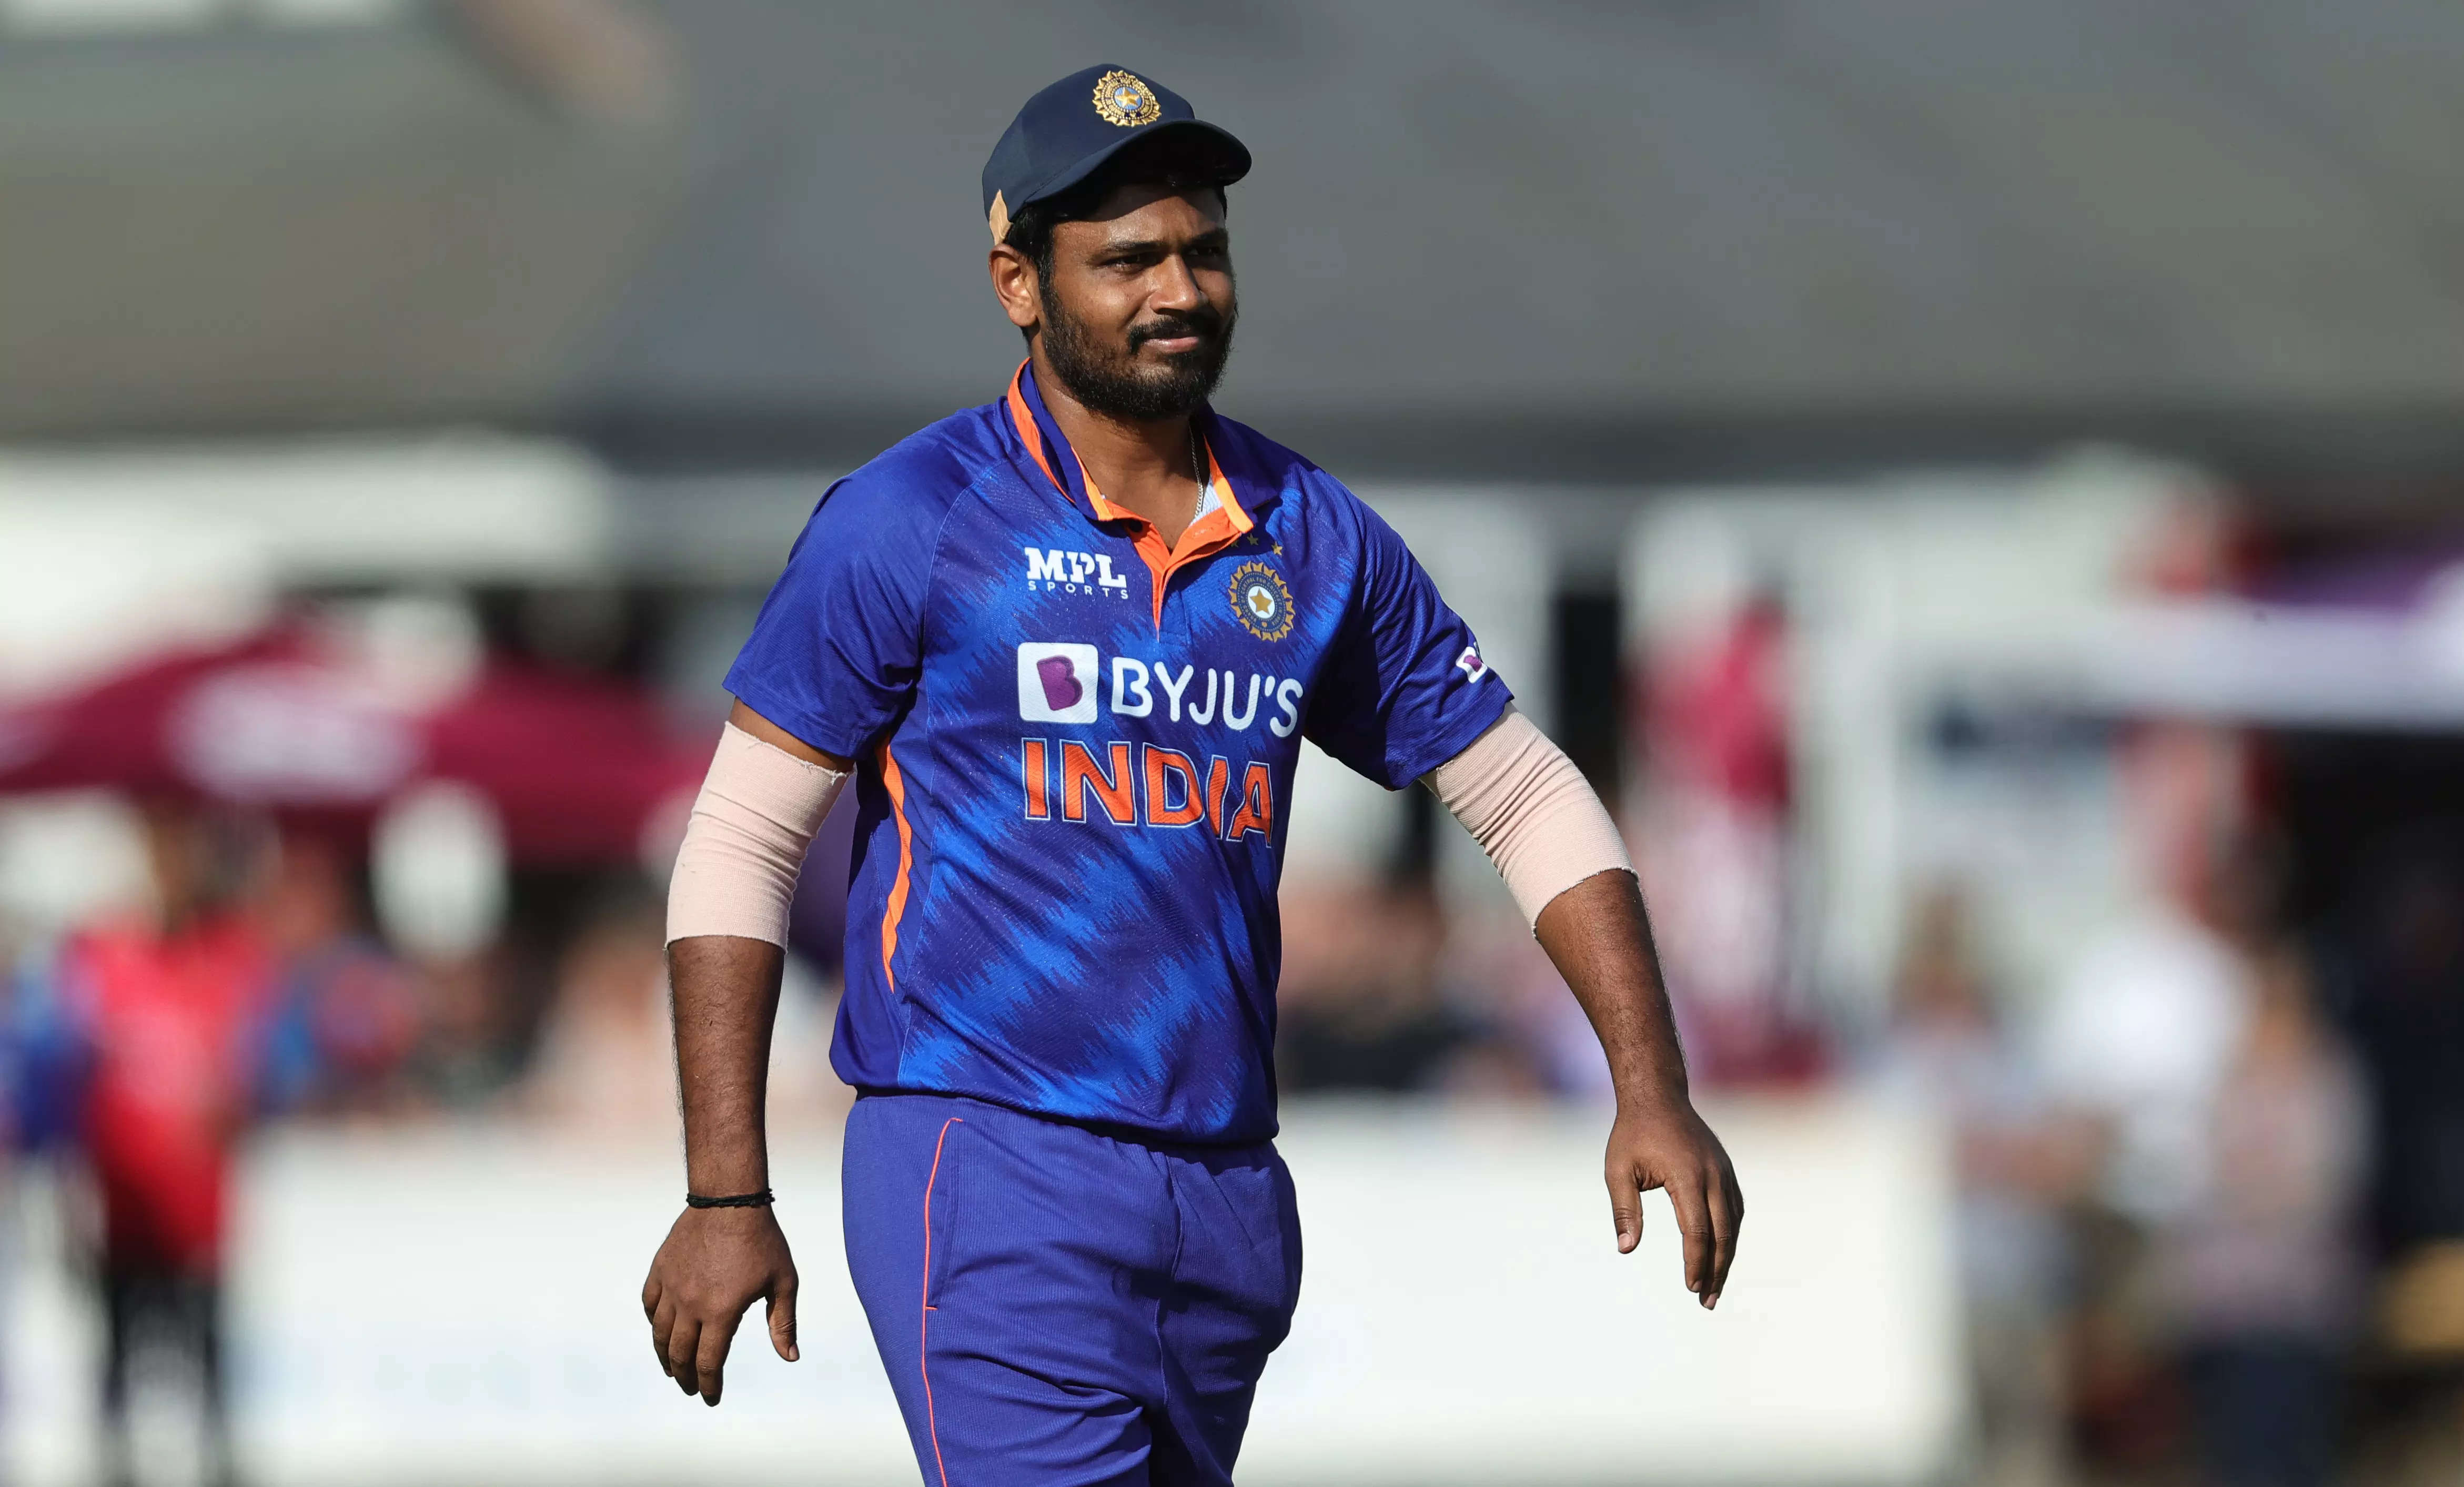 India vs Australia: Sanju Samson tidak memainkan ODI ke-1.  BCCI Official konfirmasi Sanju masih di NCA, belum fit untuk seri IND vs AUS ODI, KL Rahul